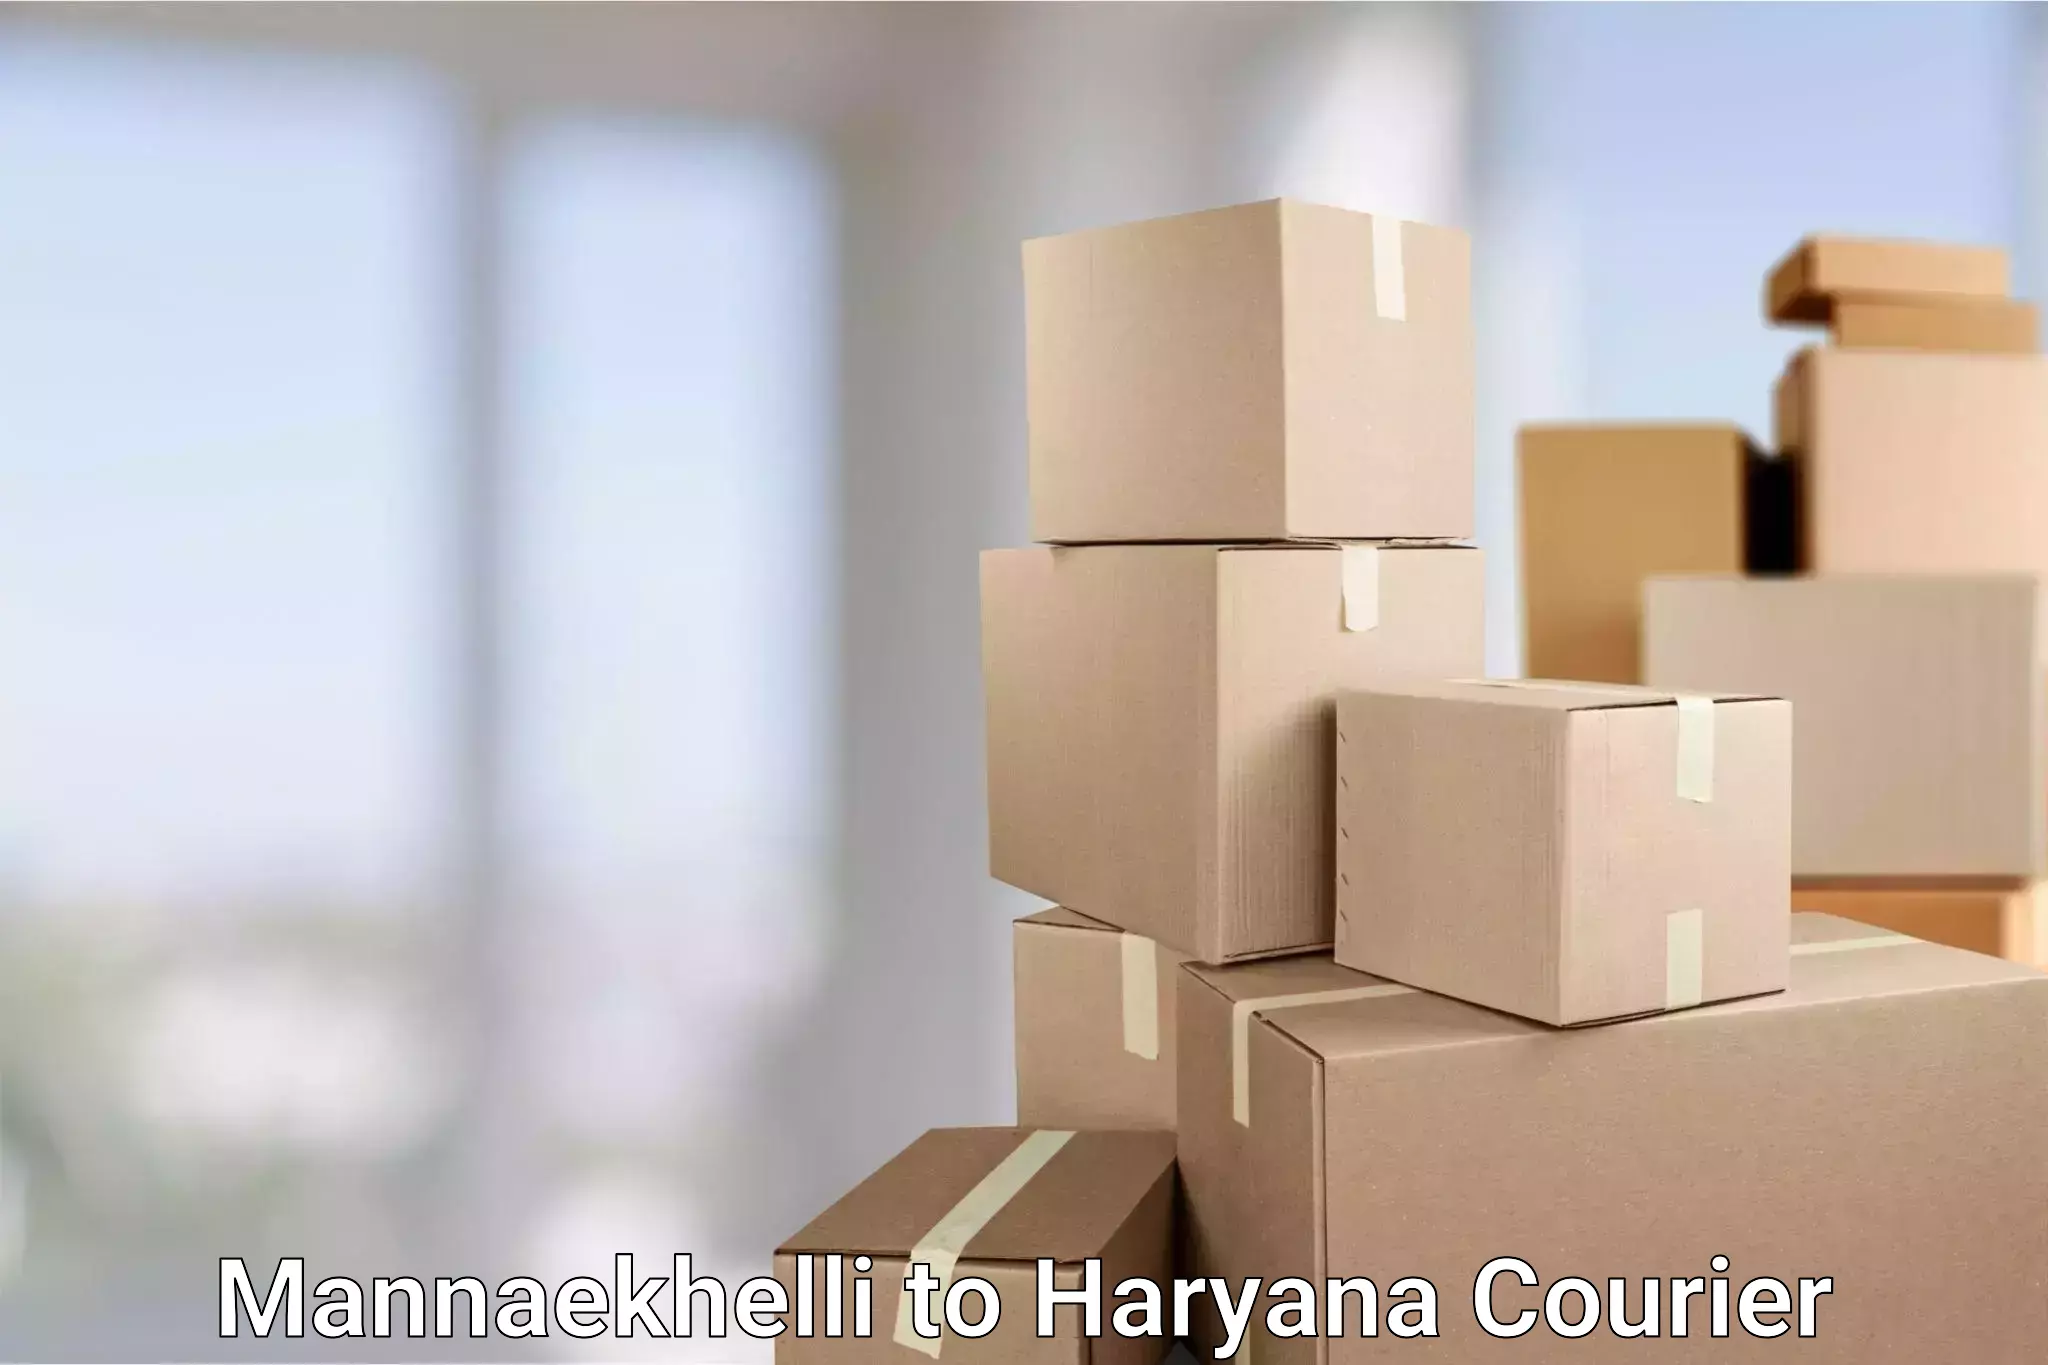 Door-to-door shipment in Mannaekhelli to Haryana